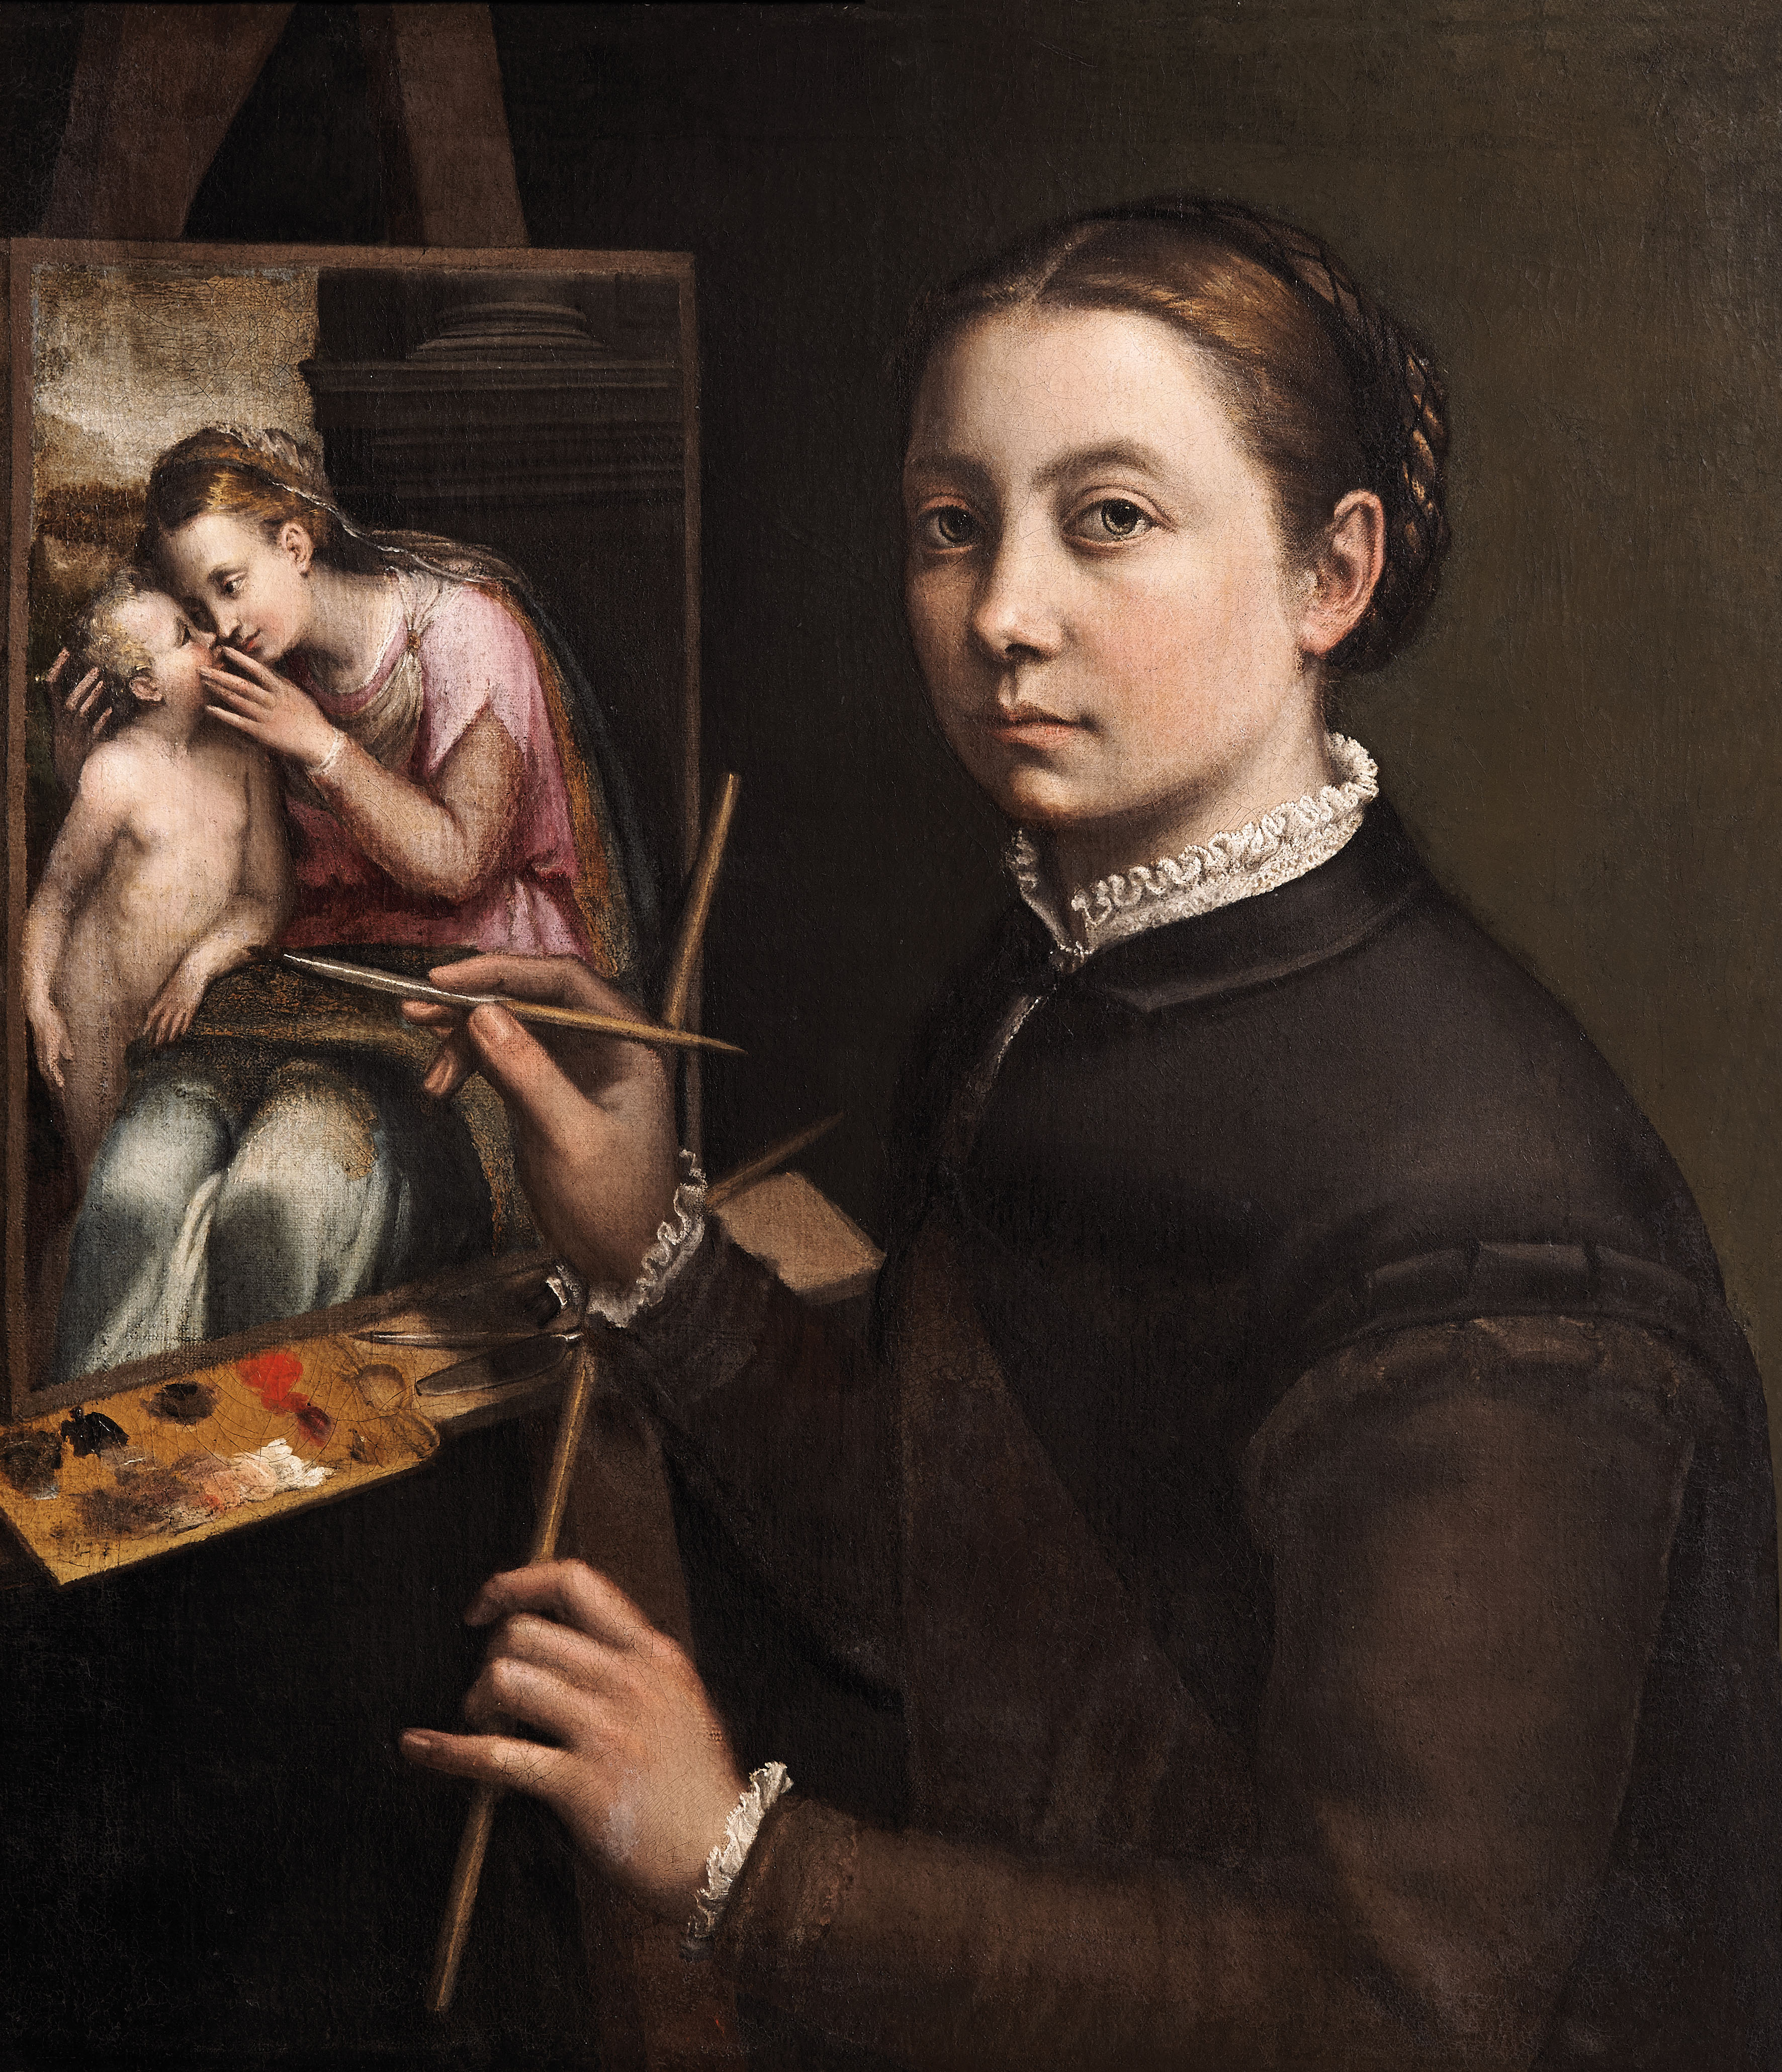 Sofonisba Anguissola y Lavinia Fontana. Historia de dos pintoras